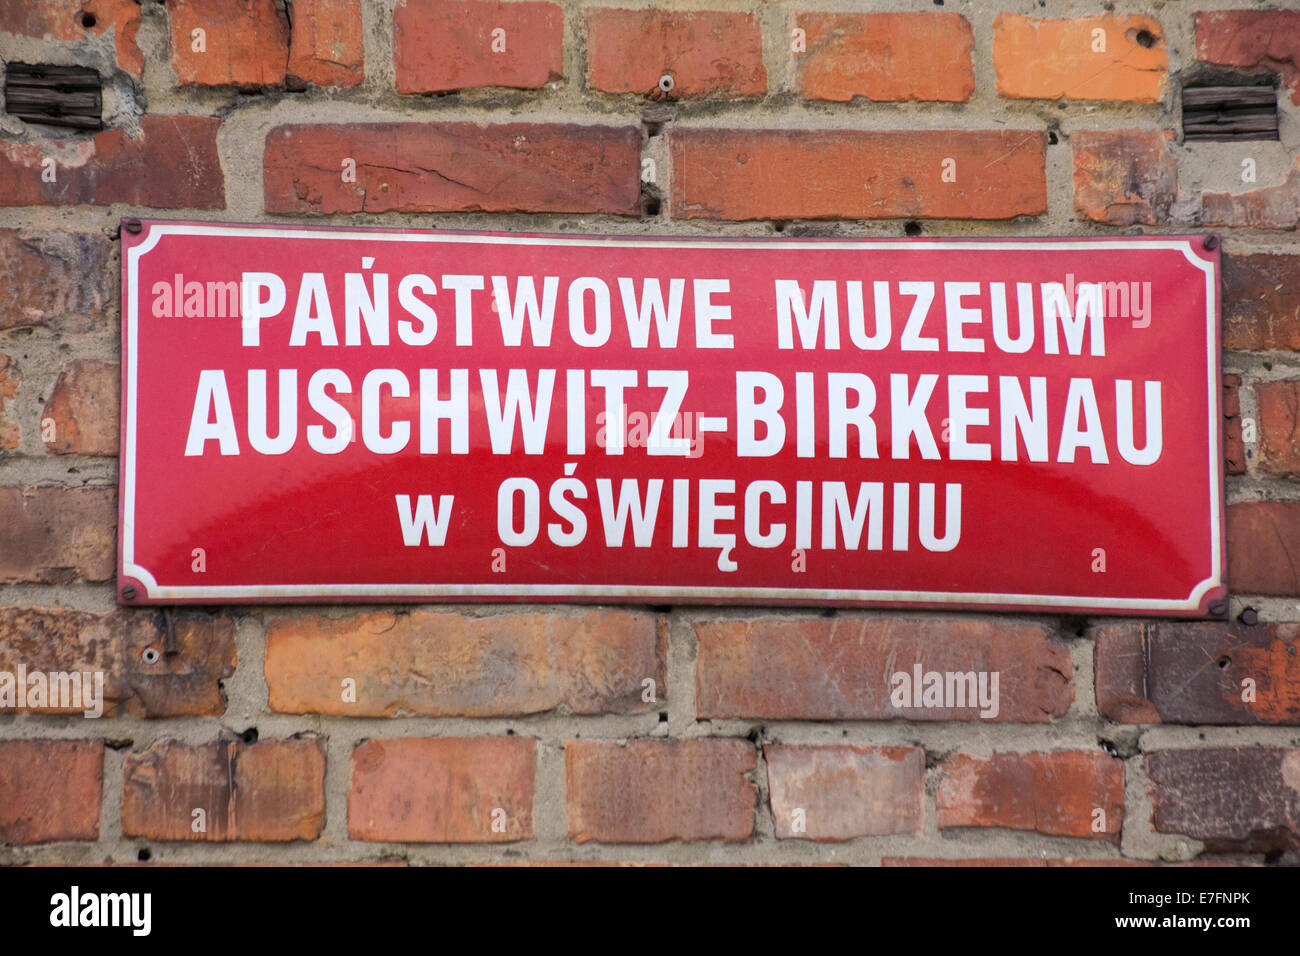 Panstwowe muzeum sign at the Auschwitz-Birkenau concentration camp, Auschwitz, Poland Stock Photo